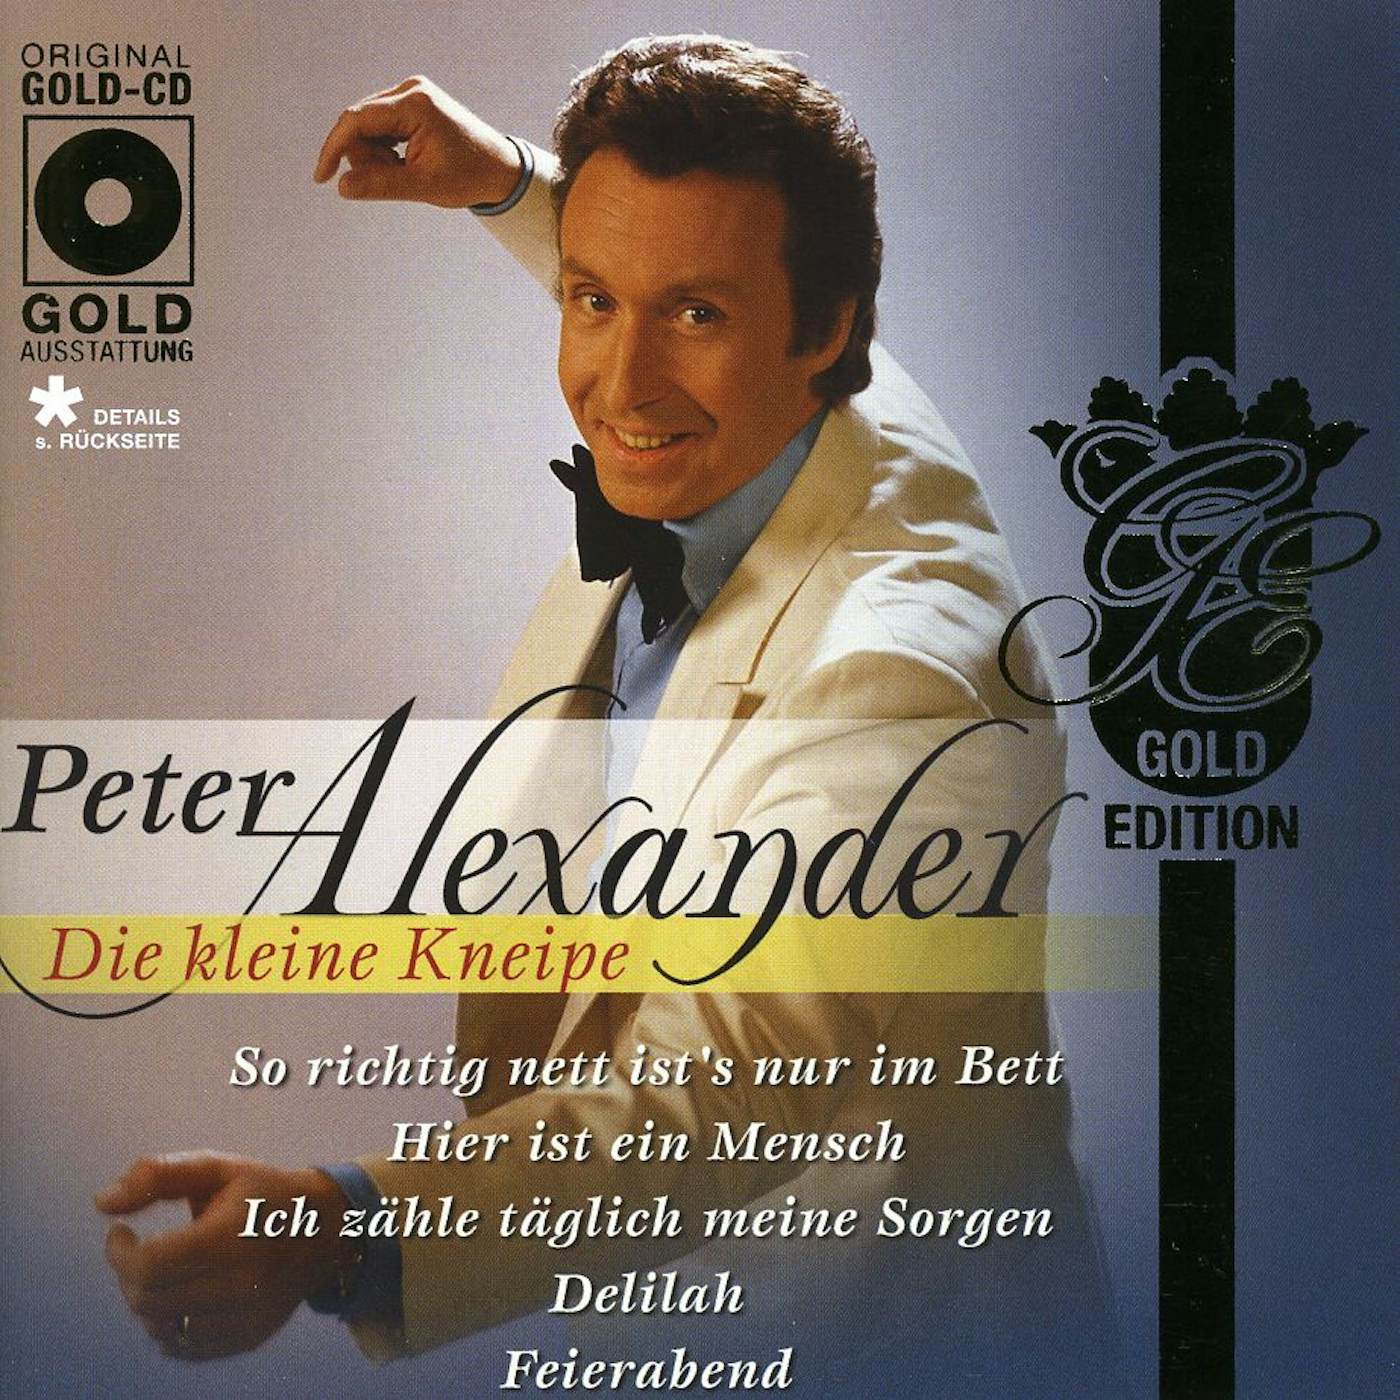 Peter Alexander DIE KLEINE KNEIPE CD